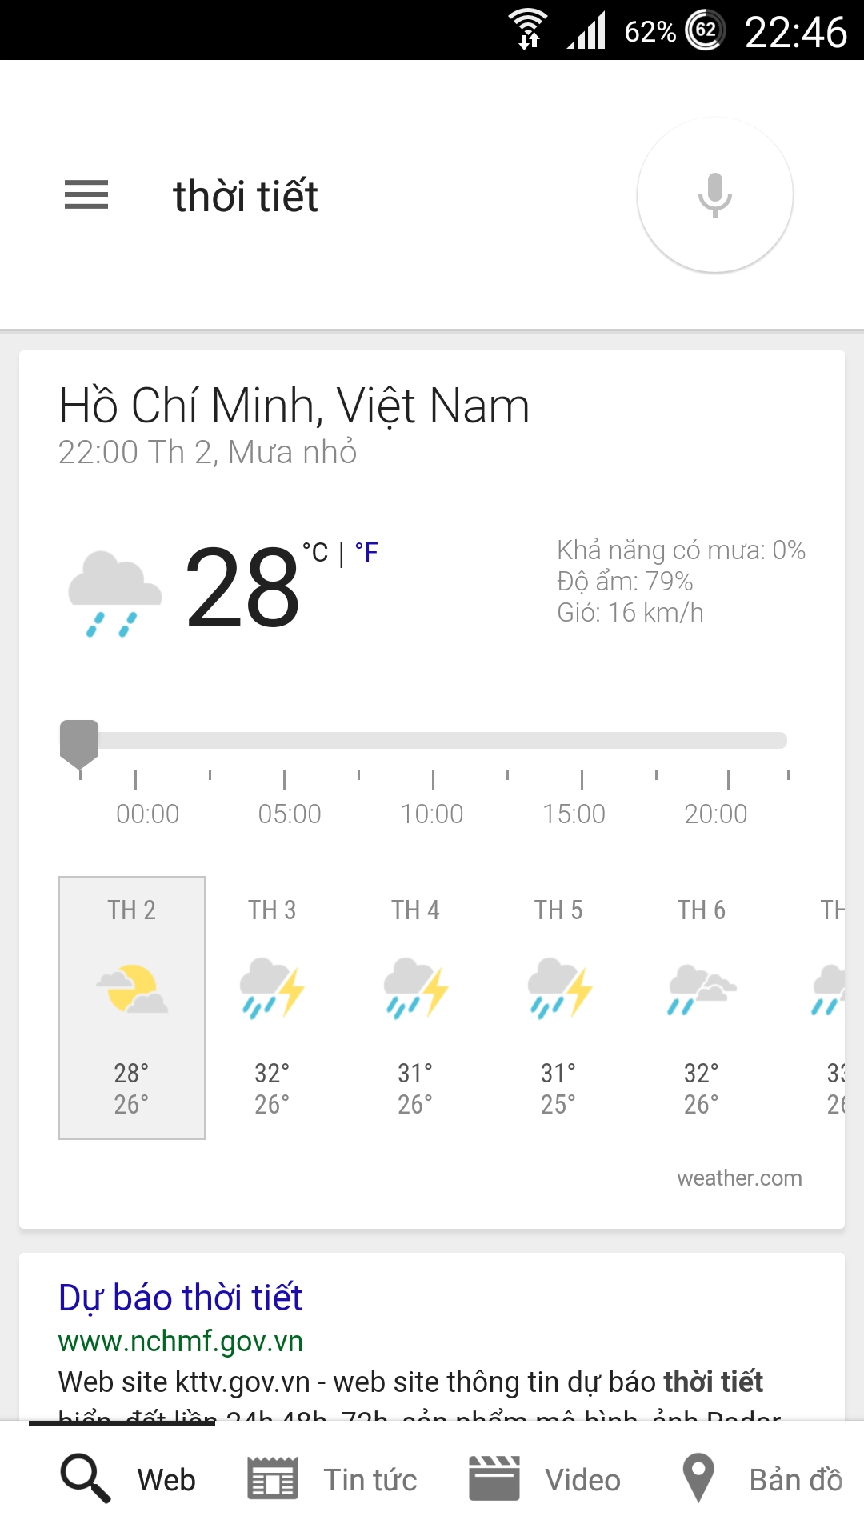 Hướng dẫn dùng Google Now tìm kiếm giọng nói bằng tiếng Việt, bạn đã thử chưa? Dunggooglenowtimkiemgiongnoibangtiengviet5